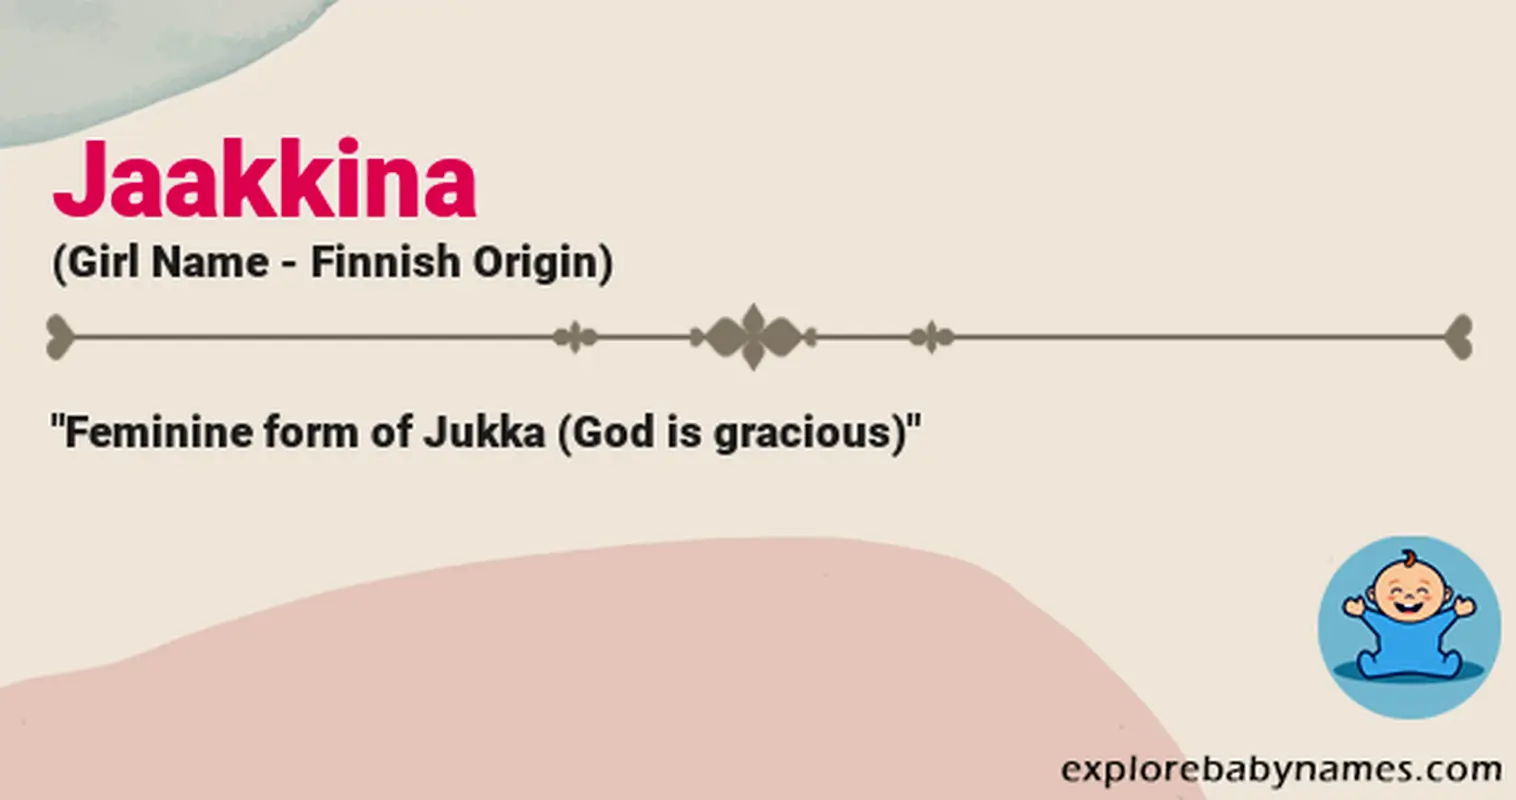 Meaning of Jaakkina